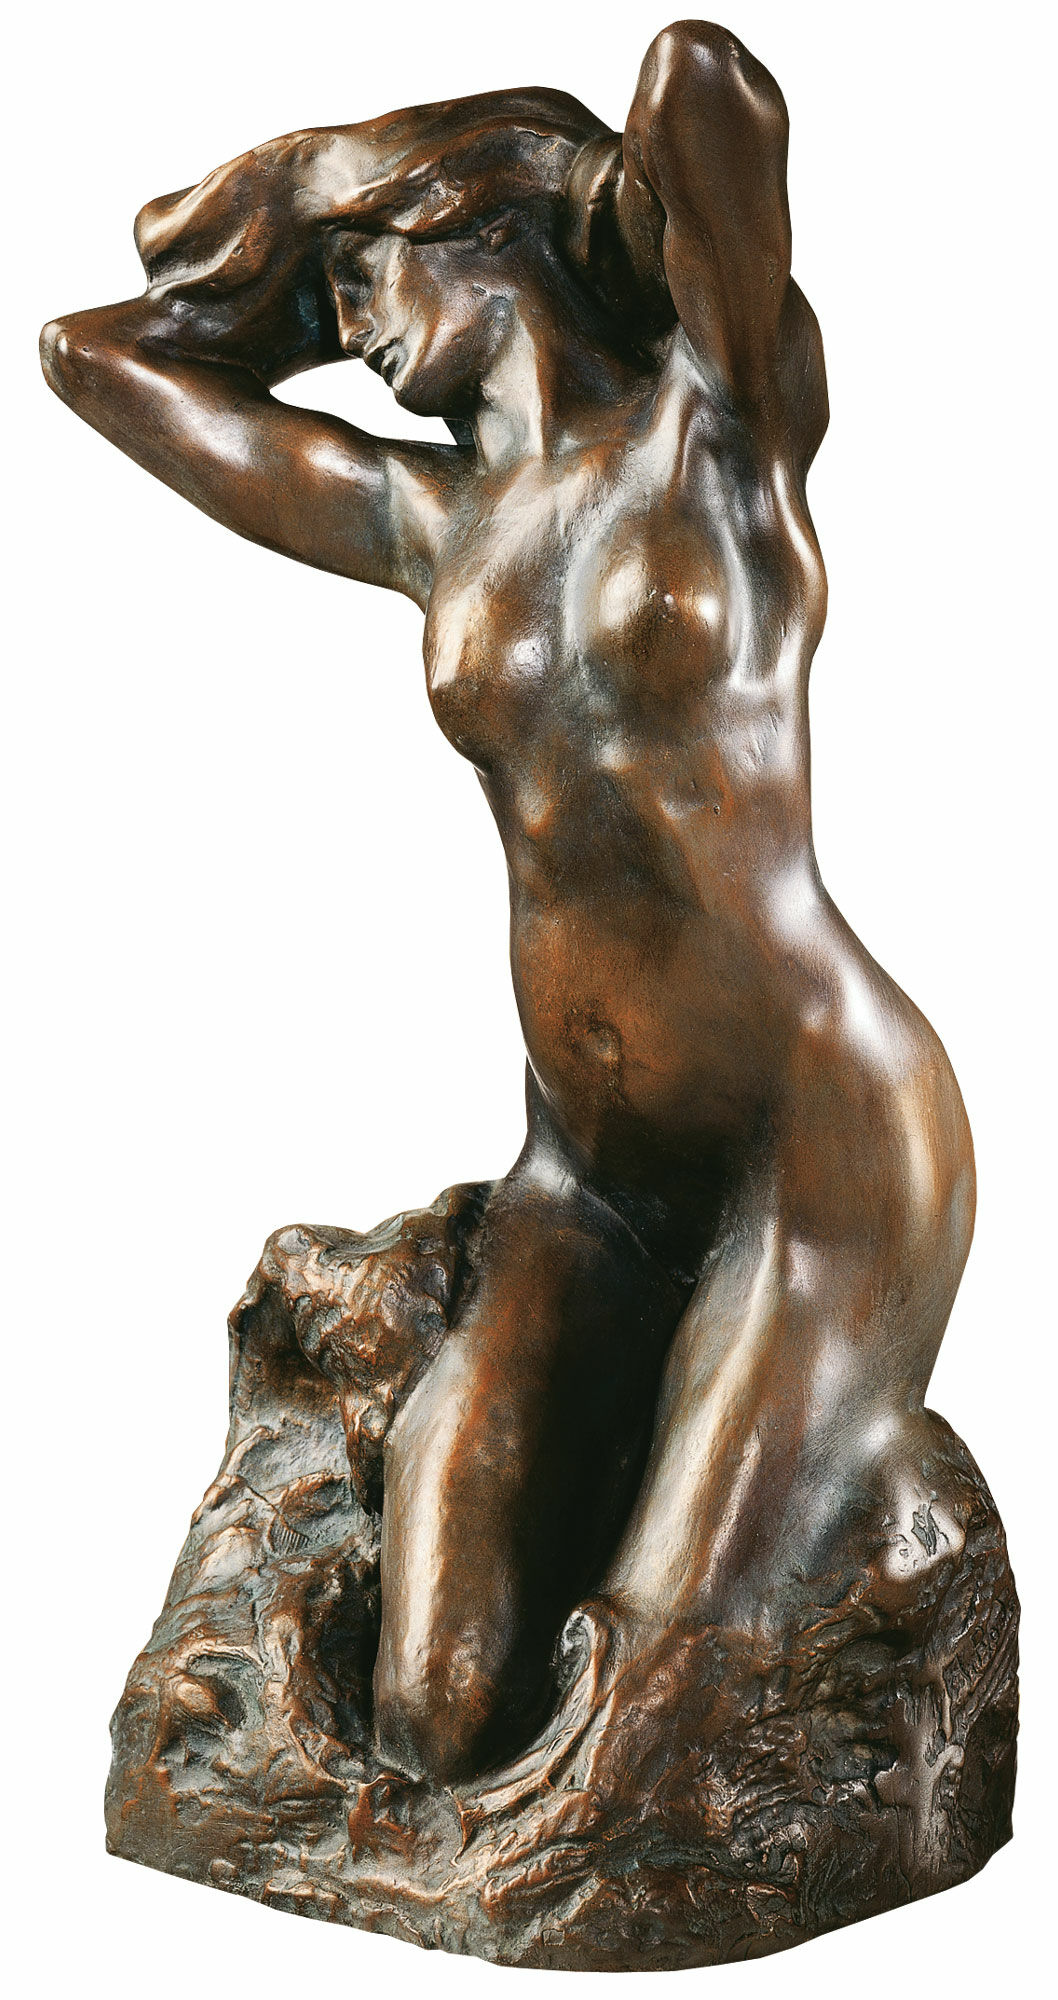 Skulptur "Baigneuse" (1880), Version in Kunstbronze von Auguste Rodin